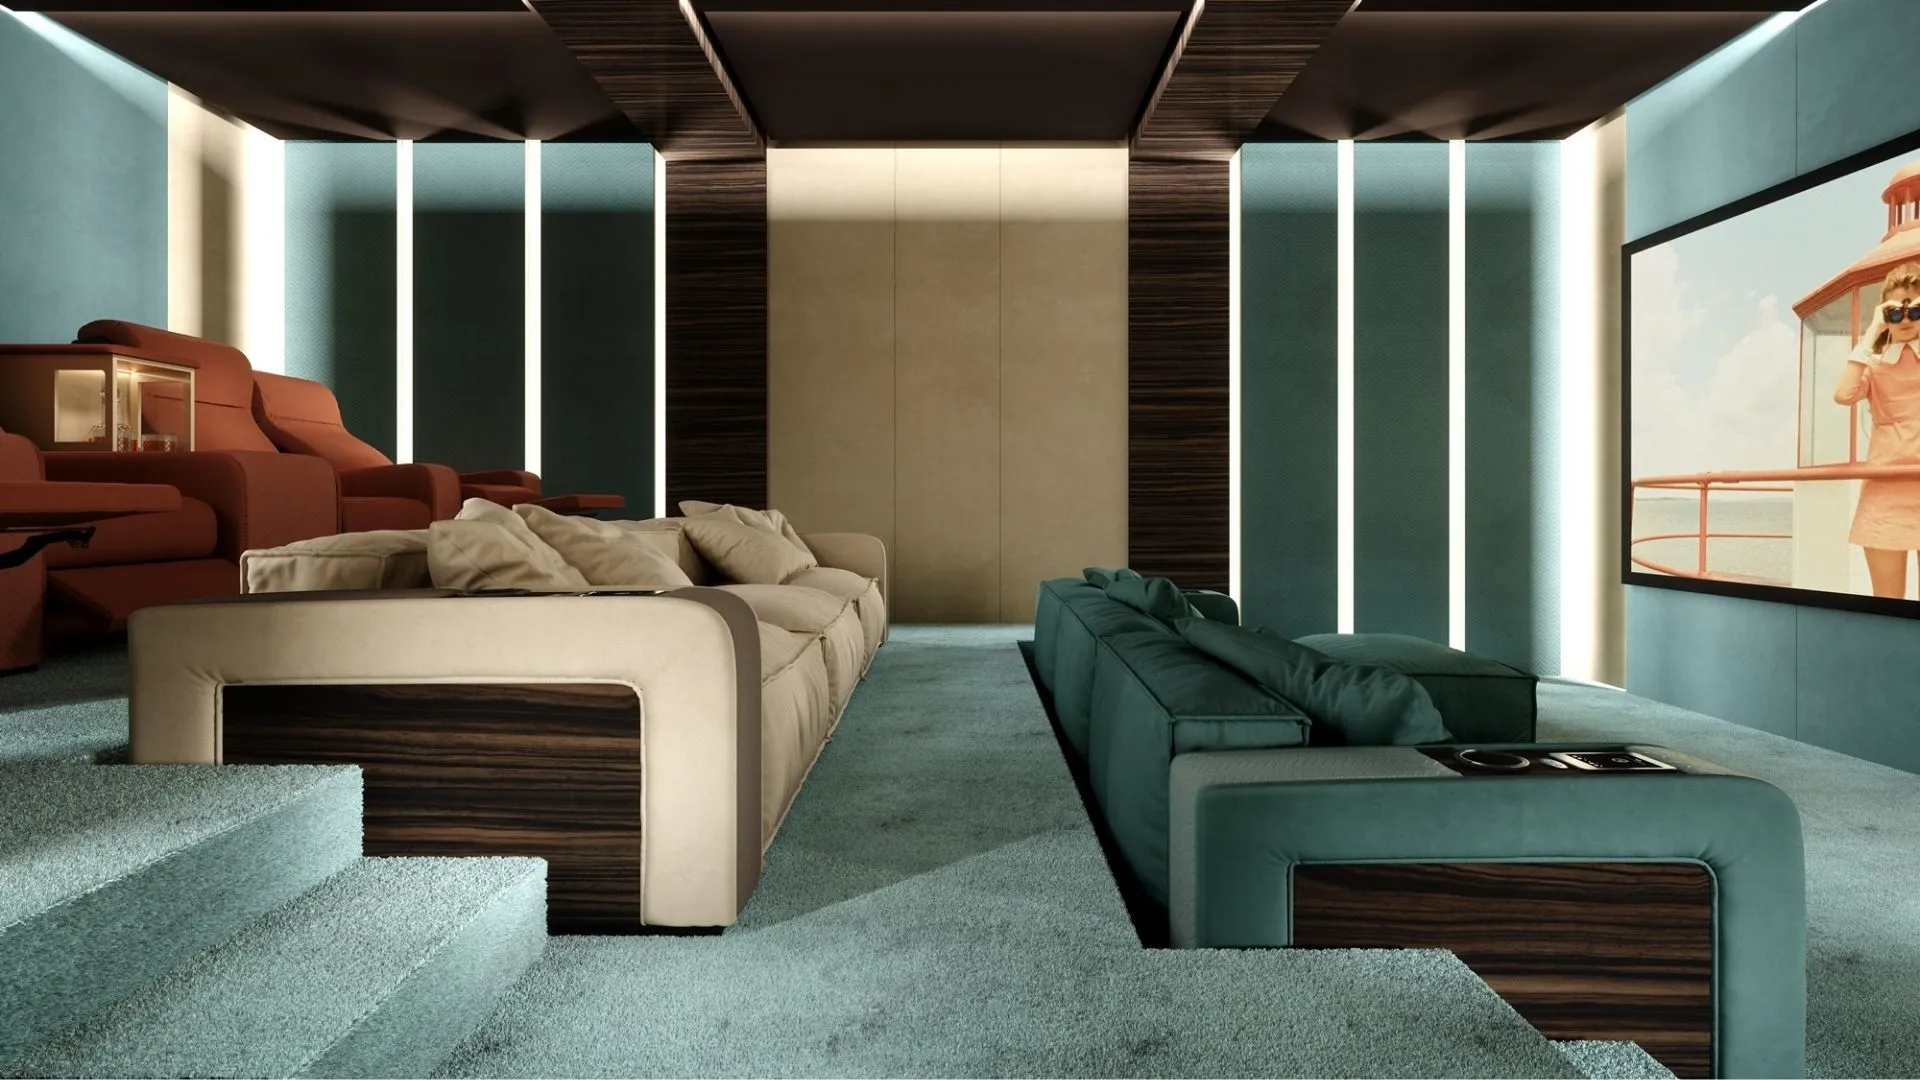 Vismara Design - Onassis Modern modular sofa